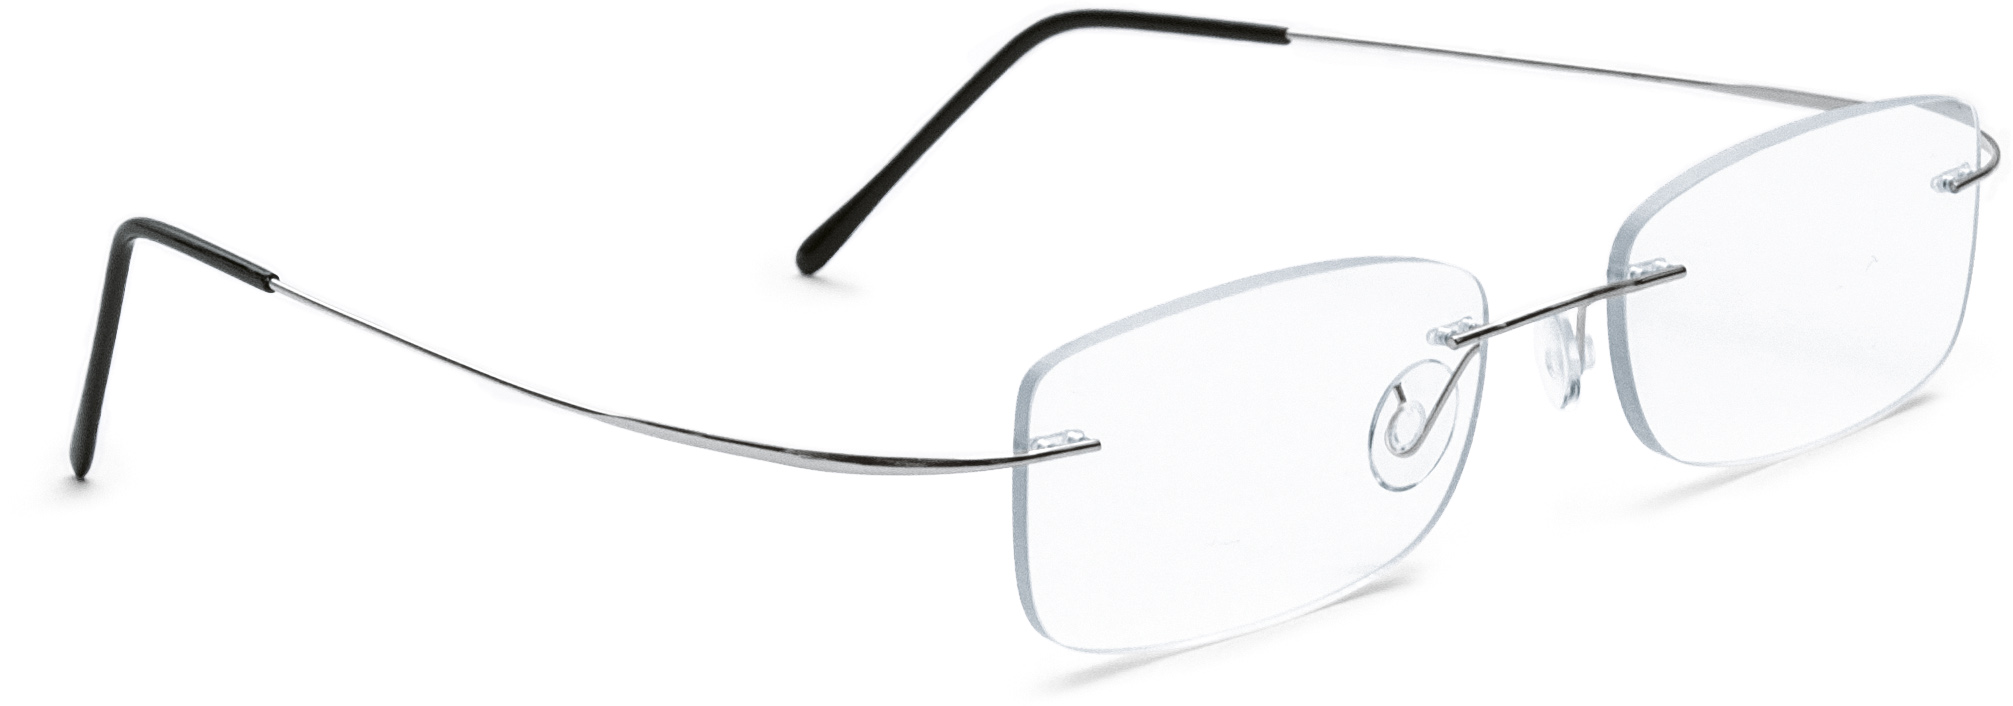 Hülsenbohrbrille Monoblockbügel, Silber